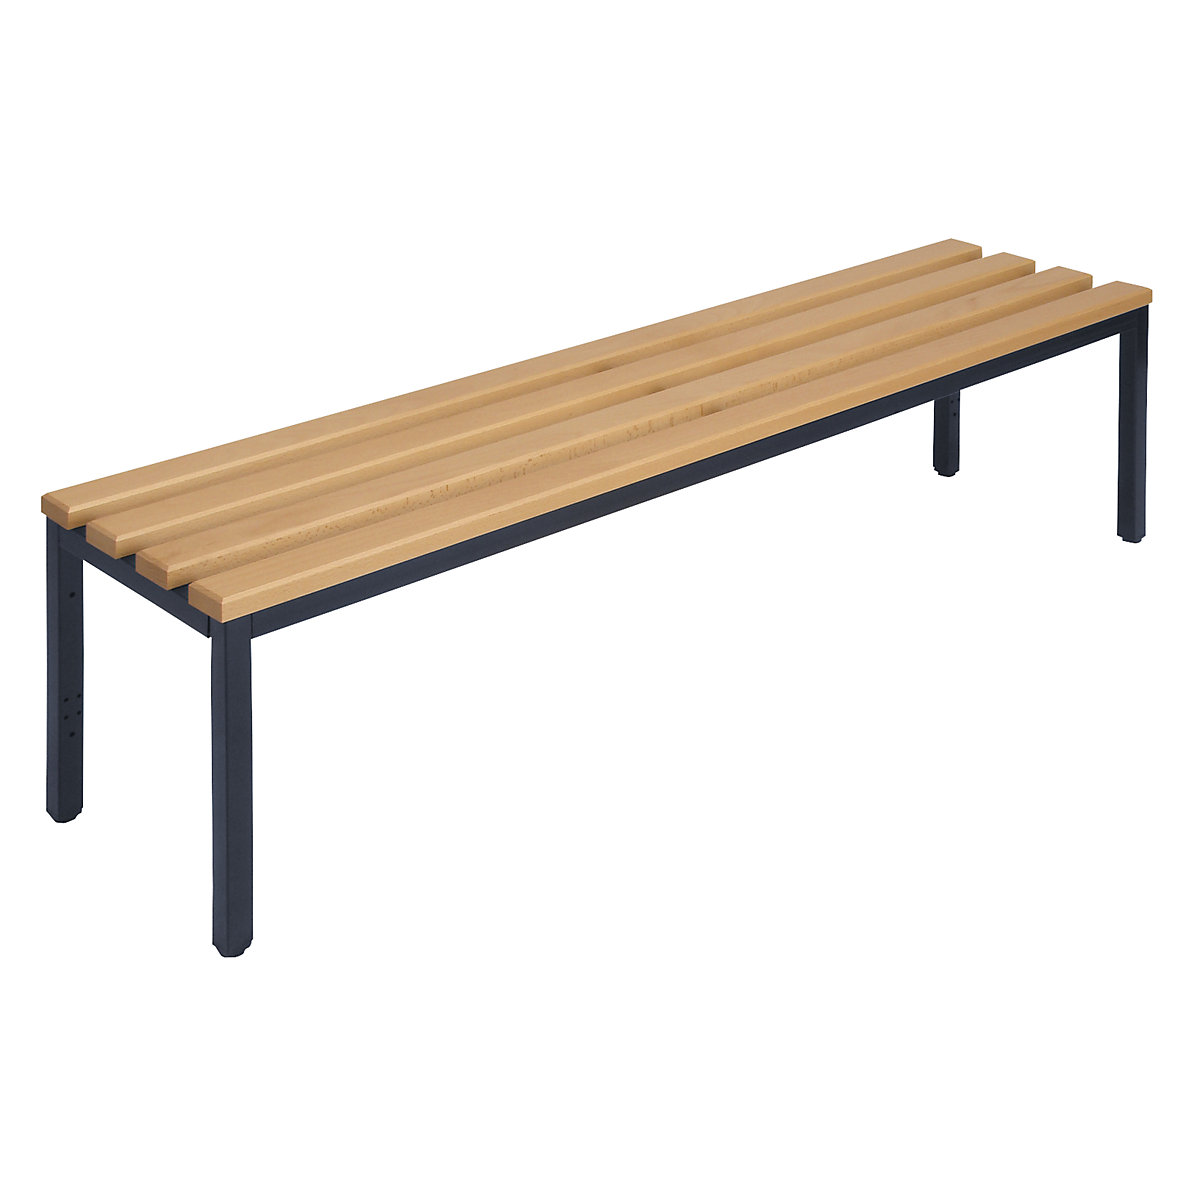 Šatnová lavice bez opěradla – Wolf, bukové dřevěné lišty, délka 1500 mm-4